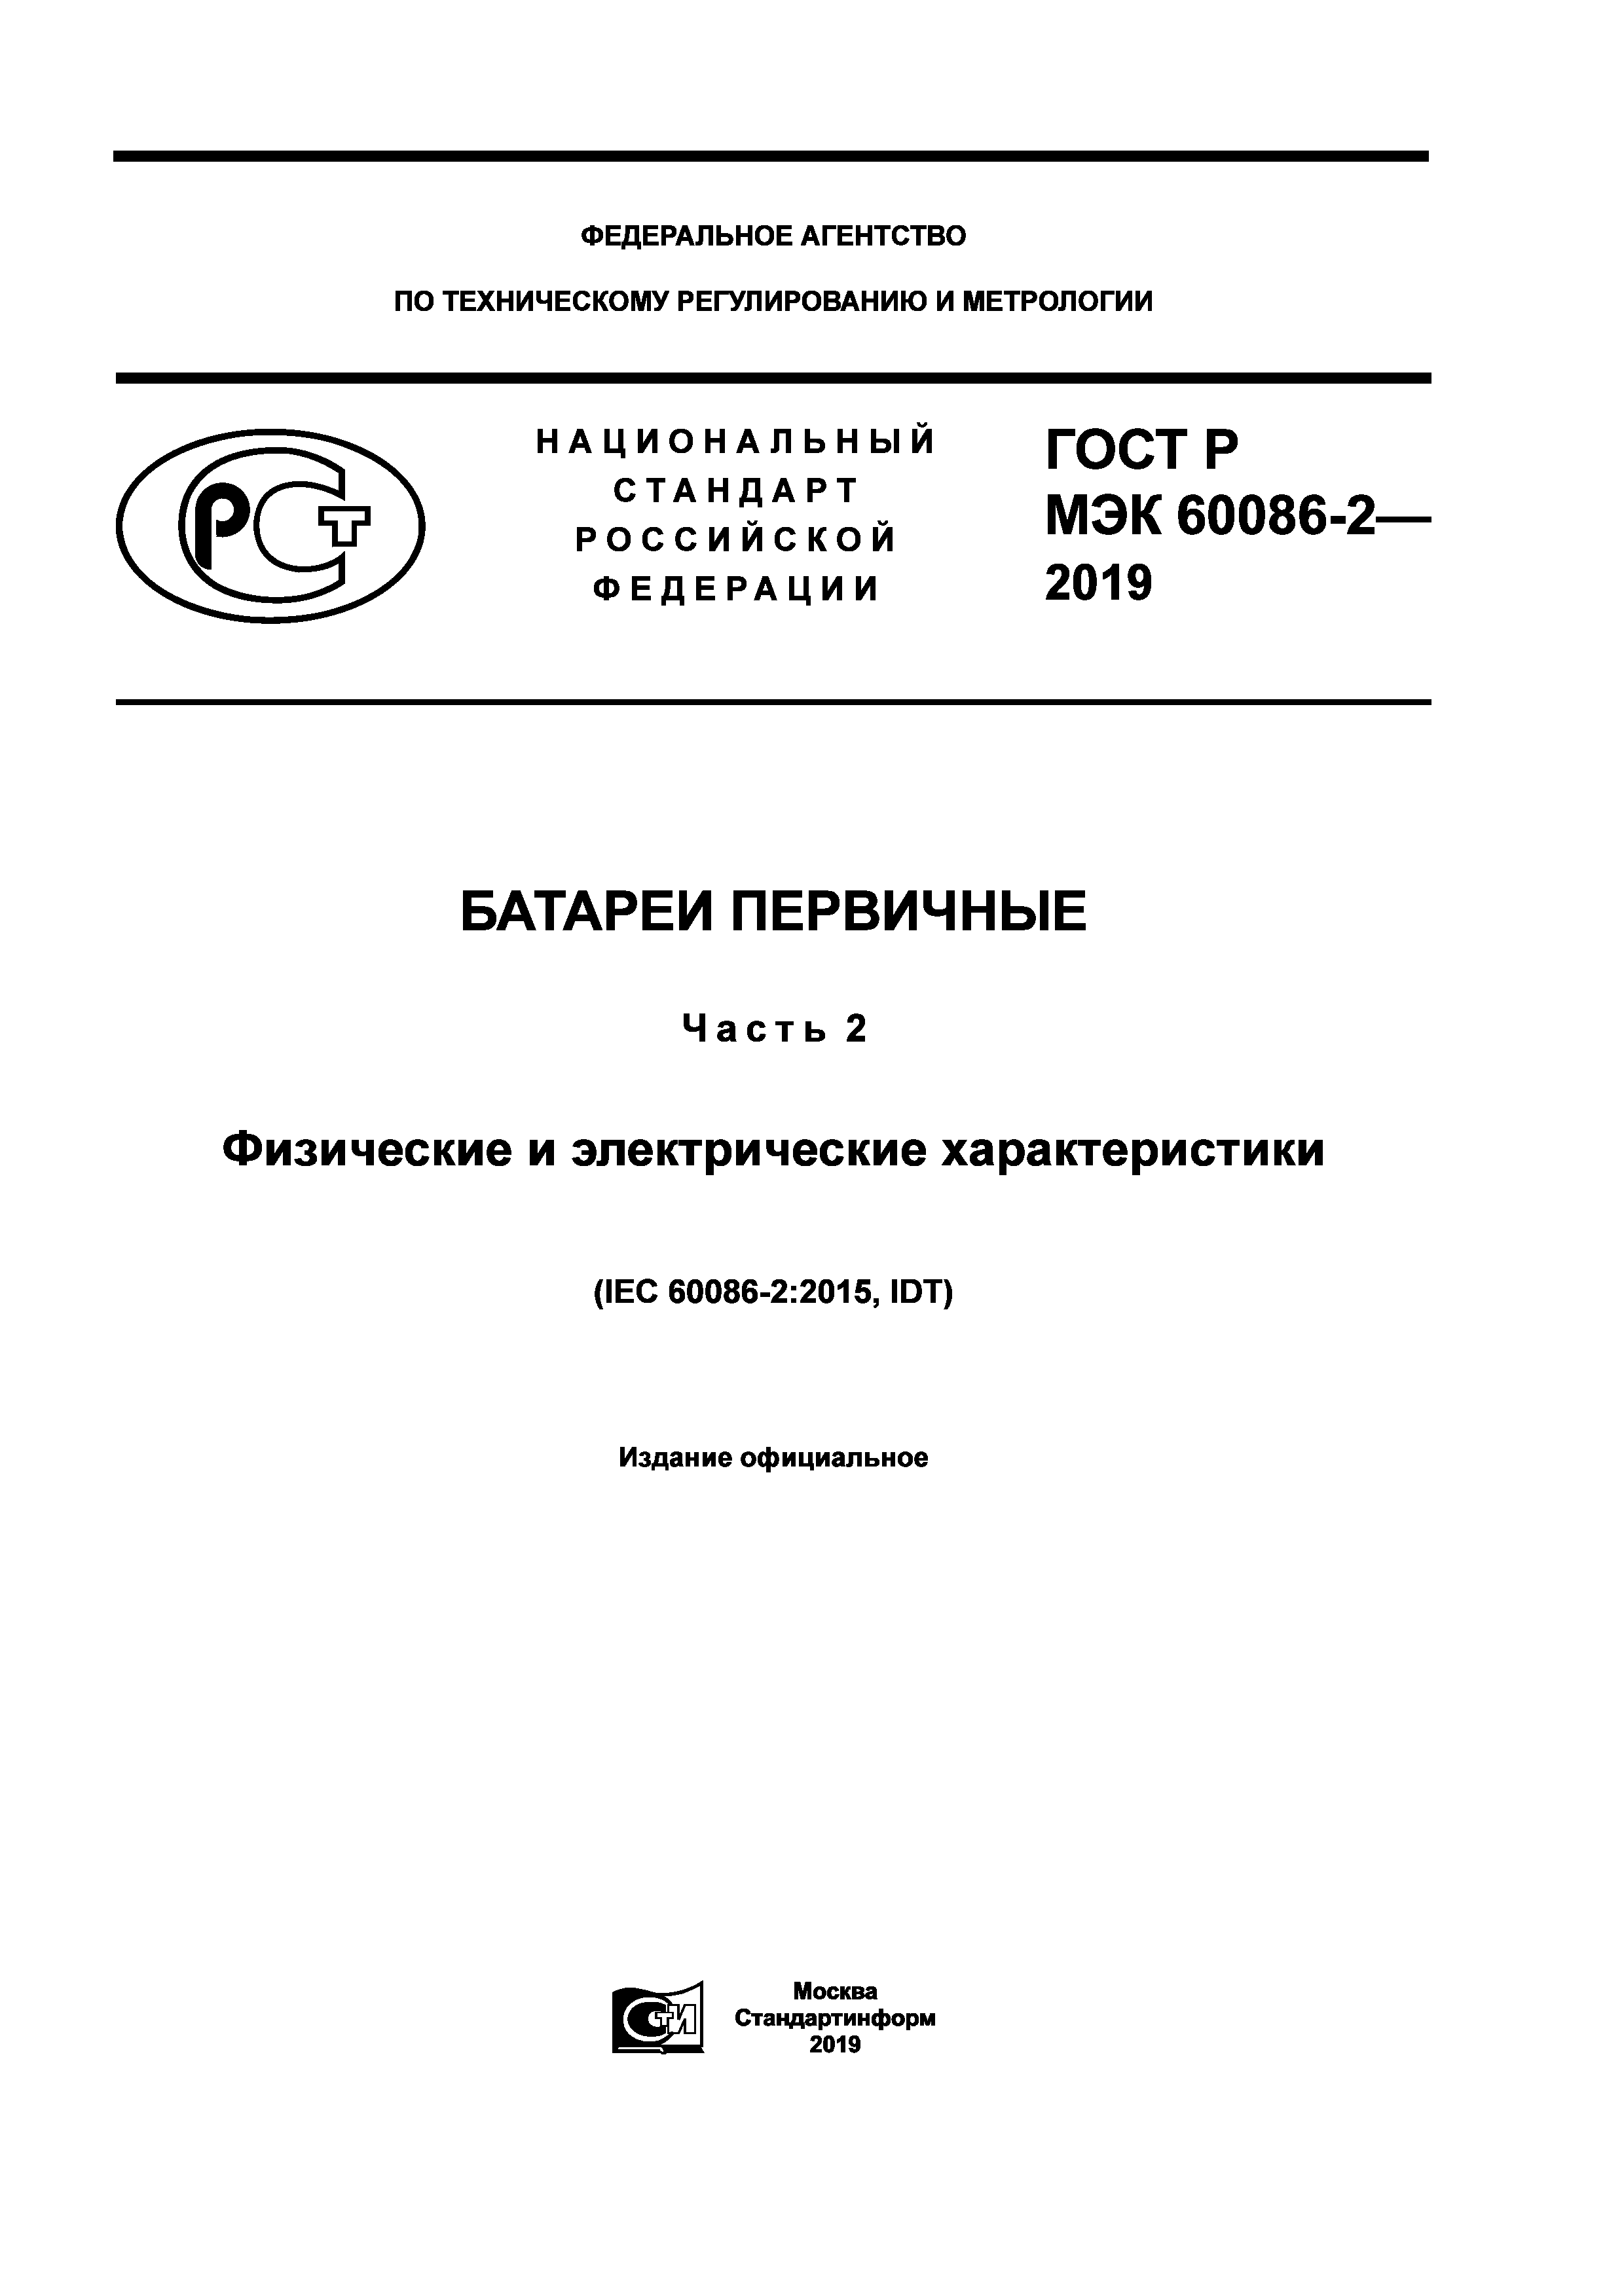 ГОСТ Р МЭК 60086-2-2019